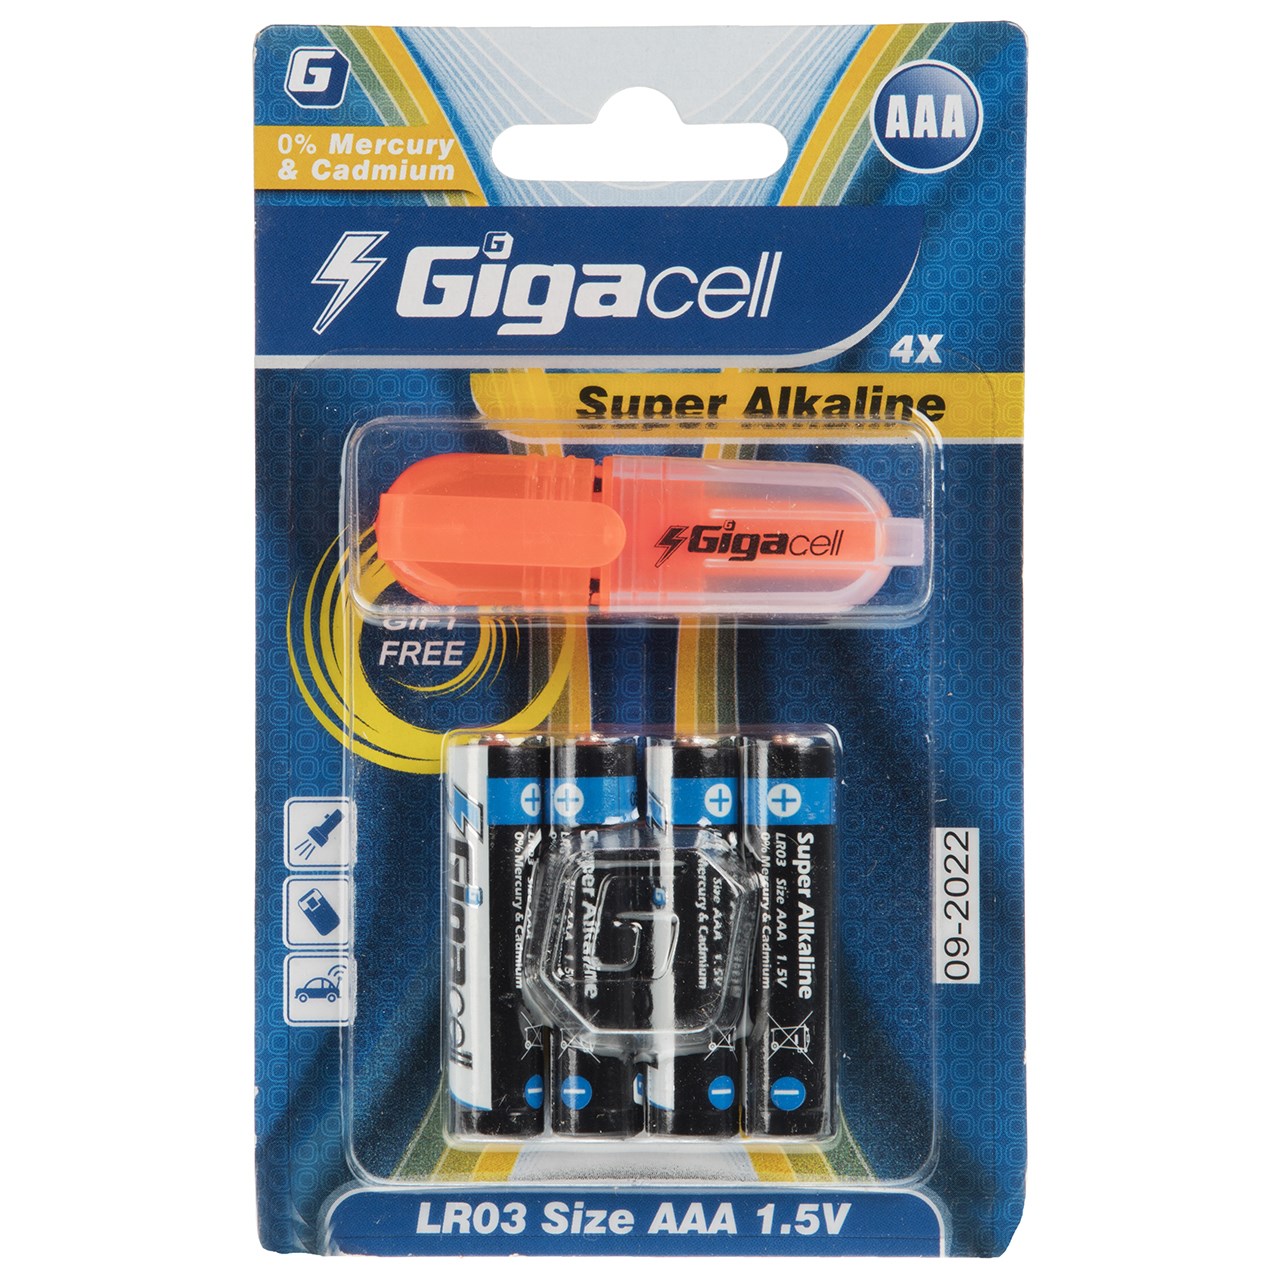 باتری نیم قلمی گیگاسل مدل Super Alkaline بسته 4 عددی